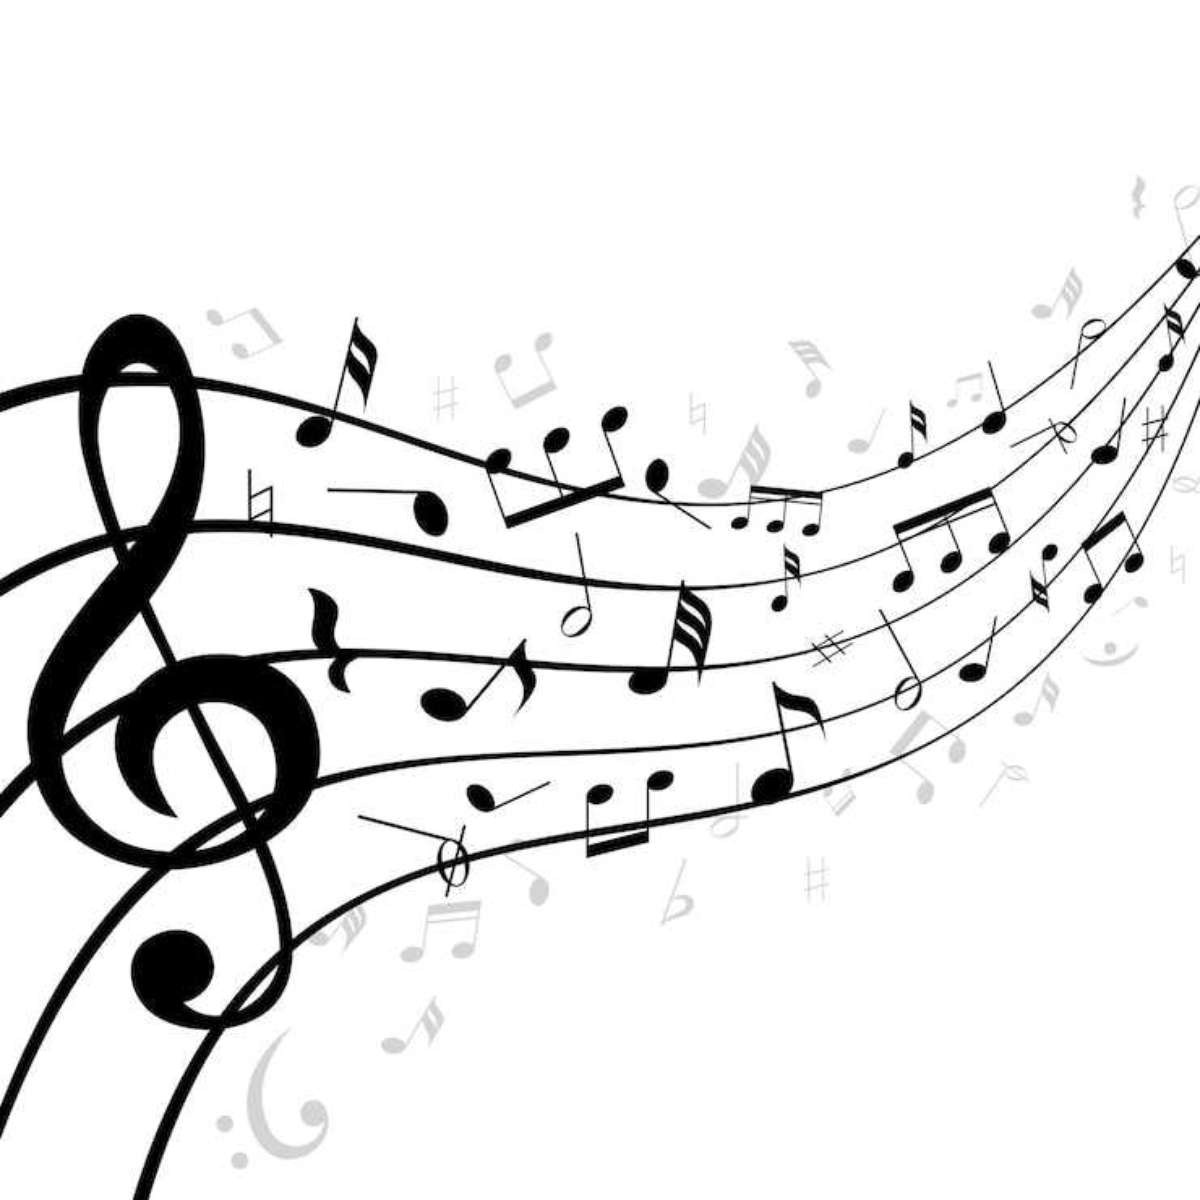 Teoria musical/Notação musical - Wikilivros